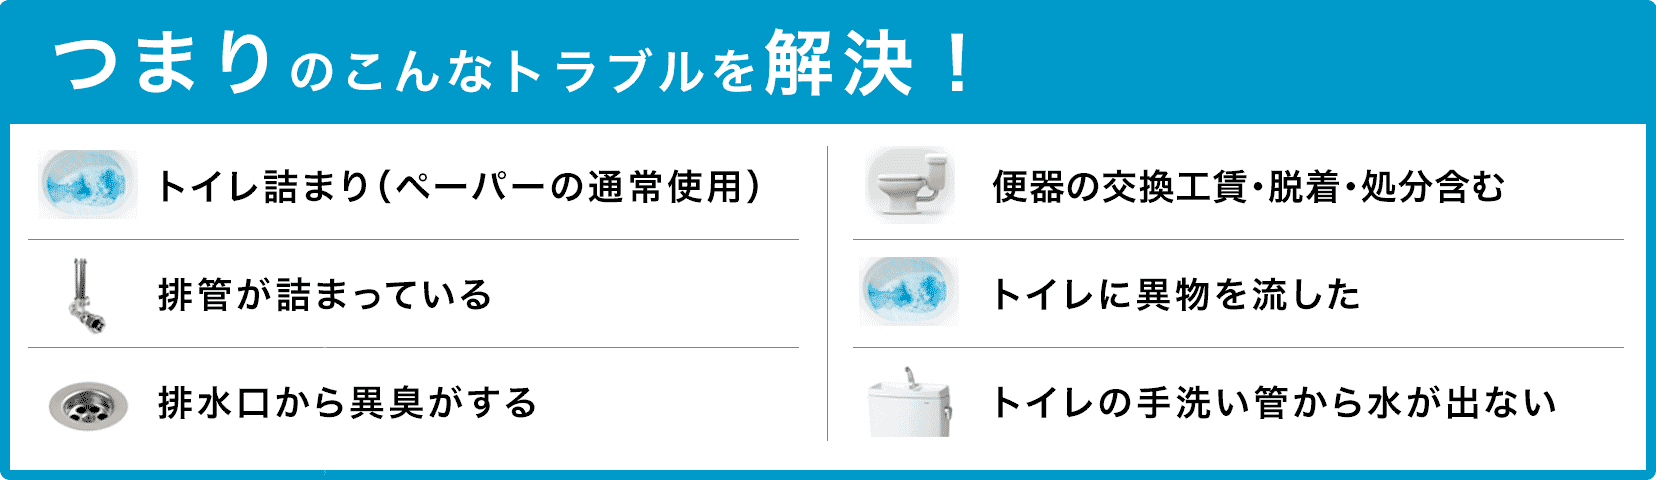 堺市 トイレタンクの水が止まらない/トイレタンクから水が出ない/トイレつまり（ペーパーの通常使用)/トイレに異物を流した/便器の交換（工賃のみ)・脱着・処分含む/トイレの手洗い管から水が出ない/ウォッシュレットの取付作業